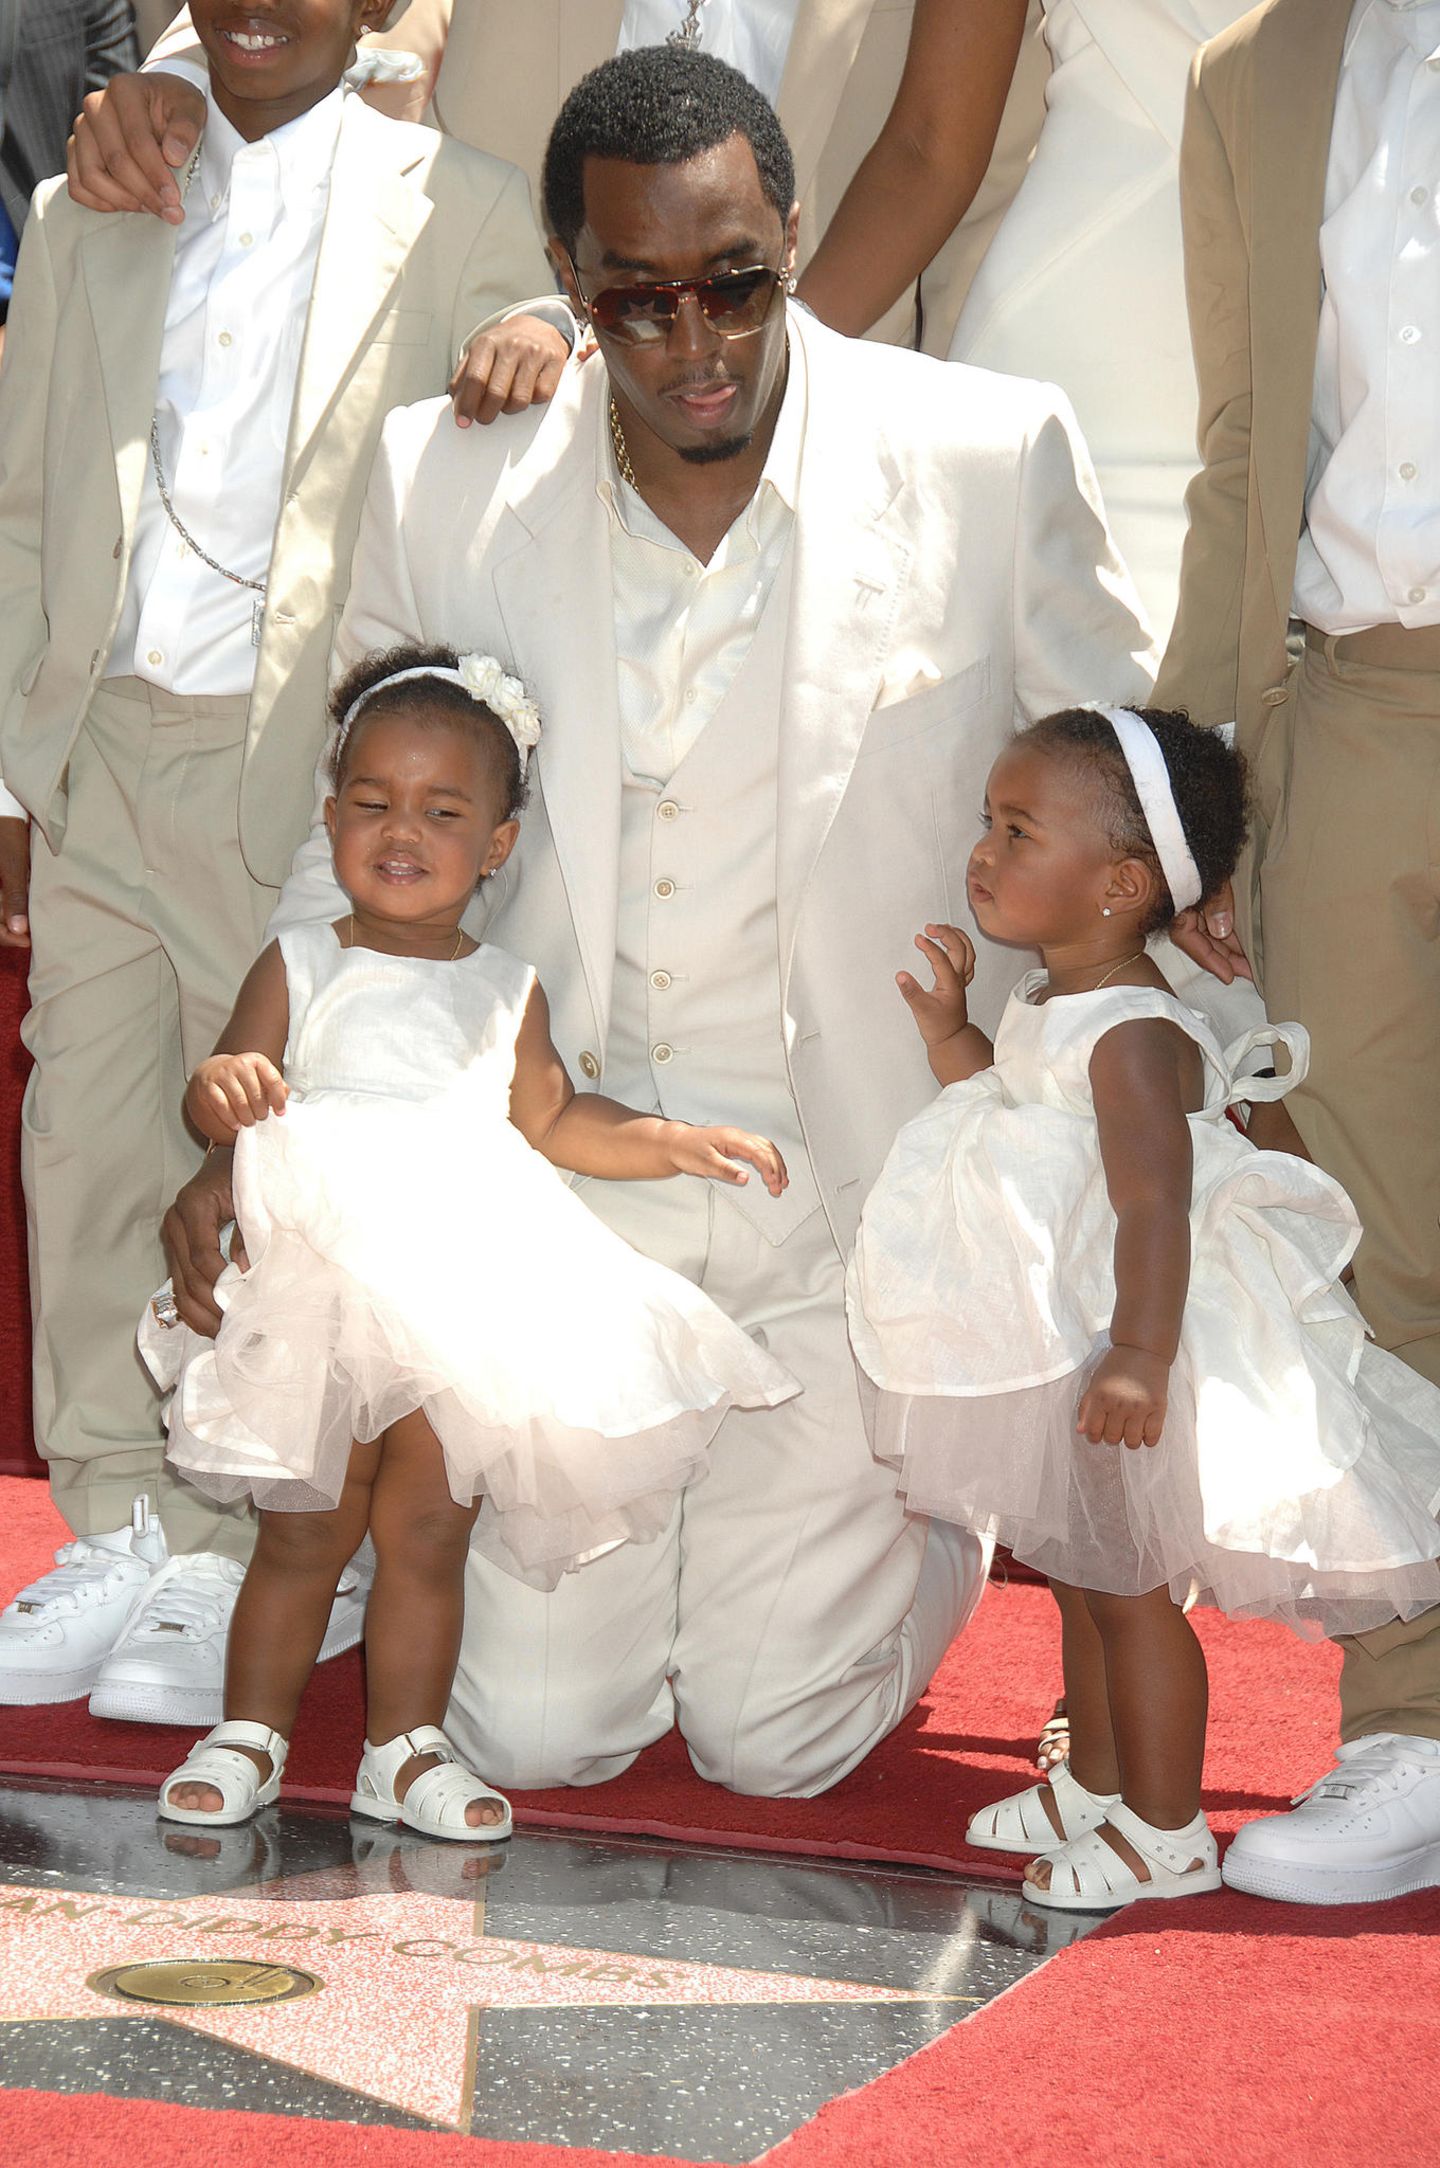 2006 kamen die Zwillinge von Sean Combs aka P. Diddy auf die Welt und sorgten immer wieder für zuckersüße Red-Carpet-Auftritte, wenn sie sich ganz schüchtern an ihren Vater schmiegten. 15 Jahre später sieht das schon ganz anders aus.